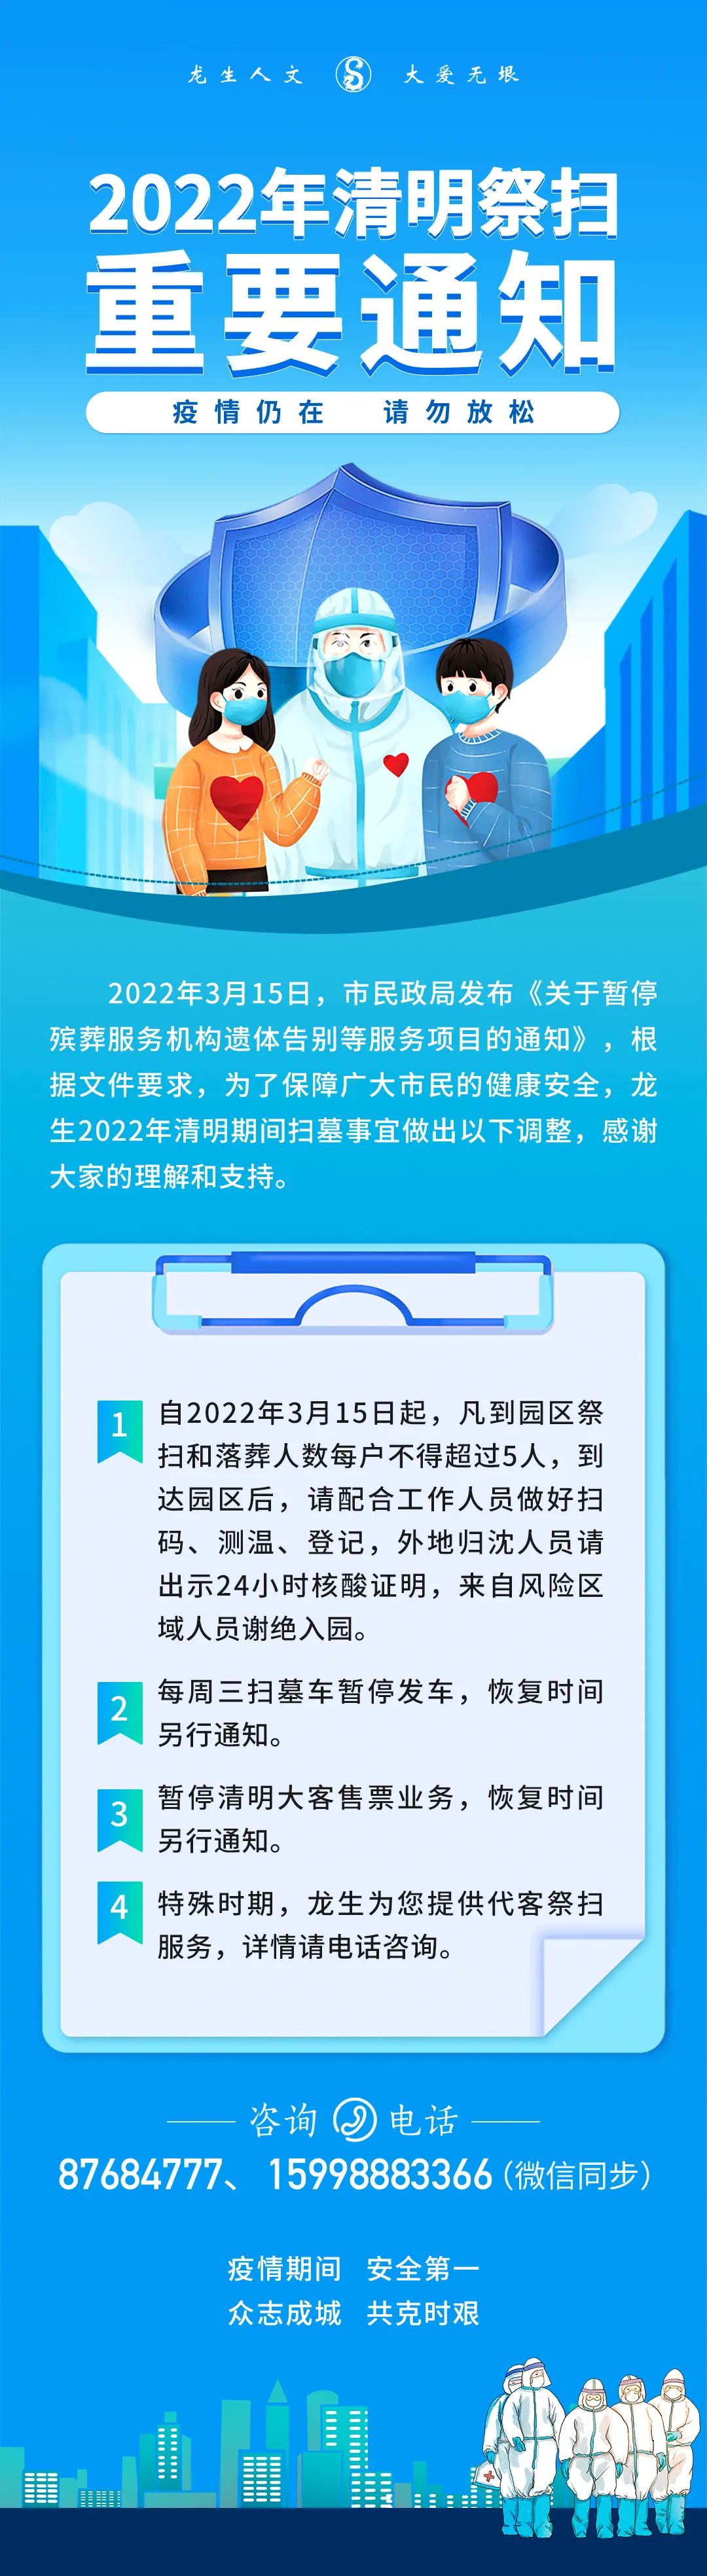 沈阳公墓2022年龙生墓园清明祭扫重要通知